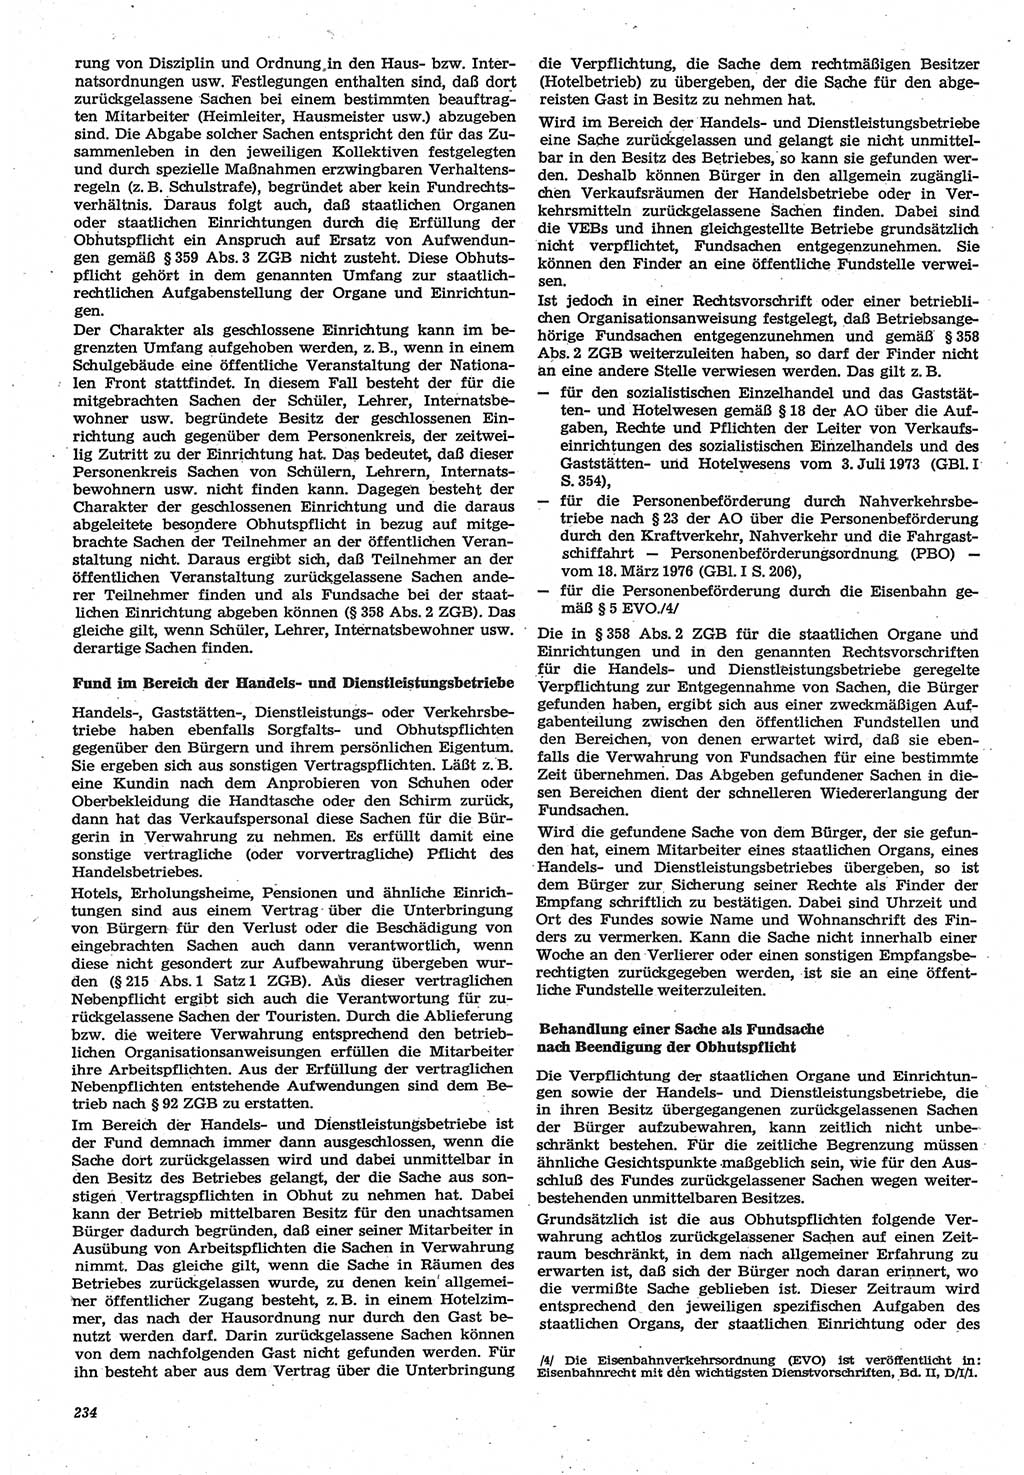 Neue Justiz (NJ), Zeitschrift für Recht und Rechtswissenschaft-Zeitschrift, sozialistisches Recht und Gesetzlichkeit, 31. Jahrgang 1977, Seite 234 (NJ DDR 1977, S. 234)